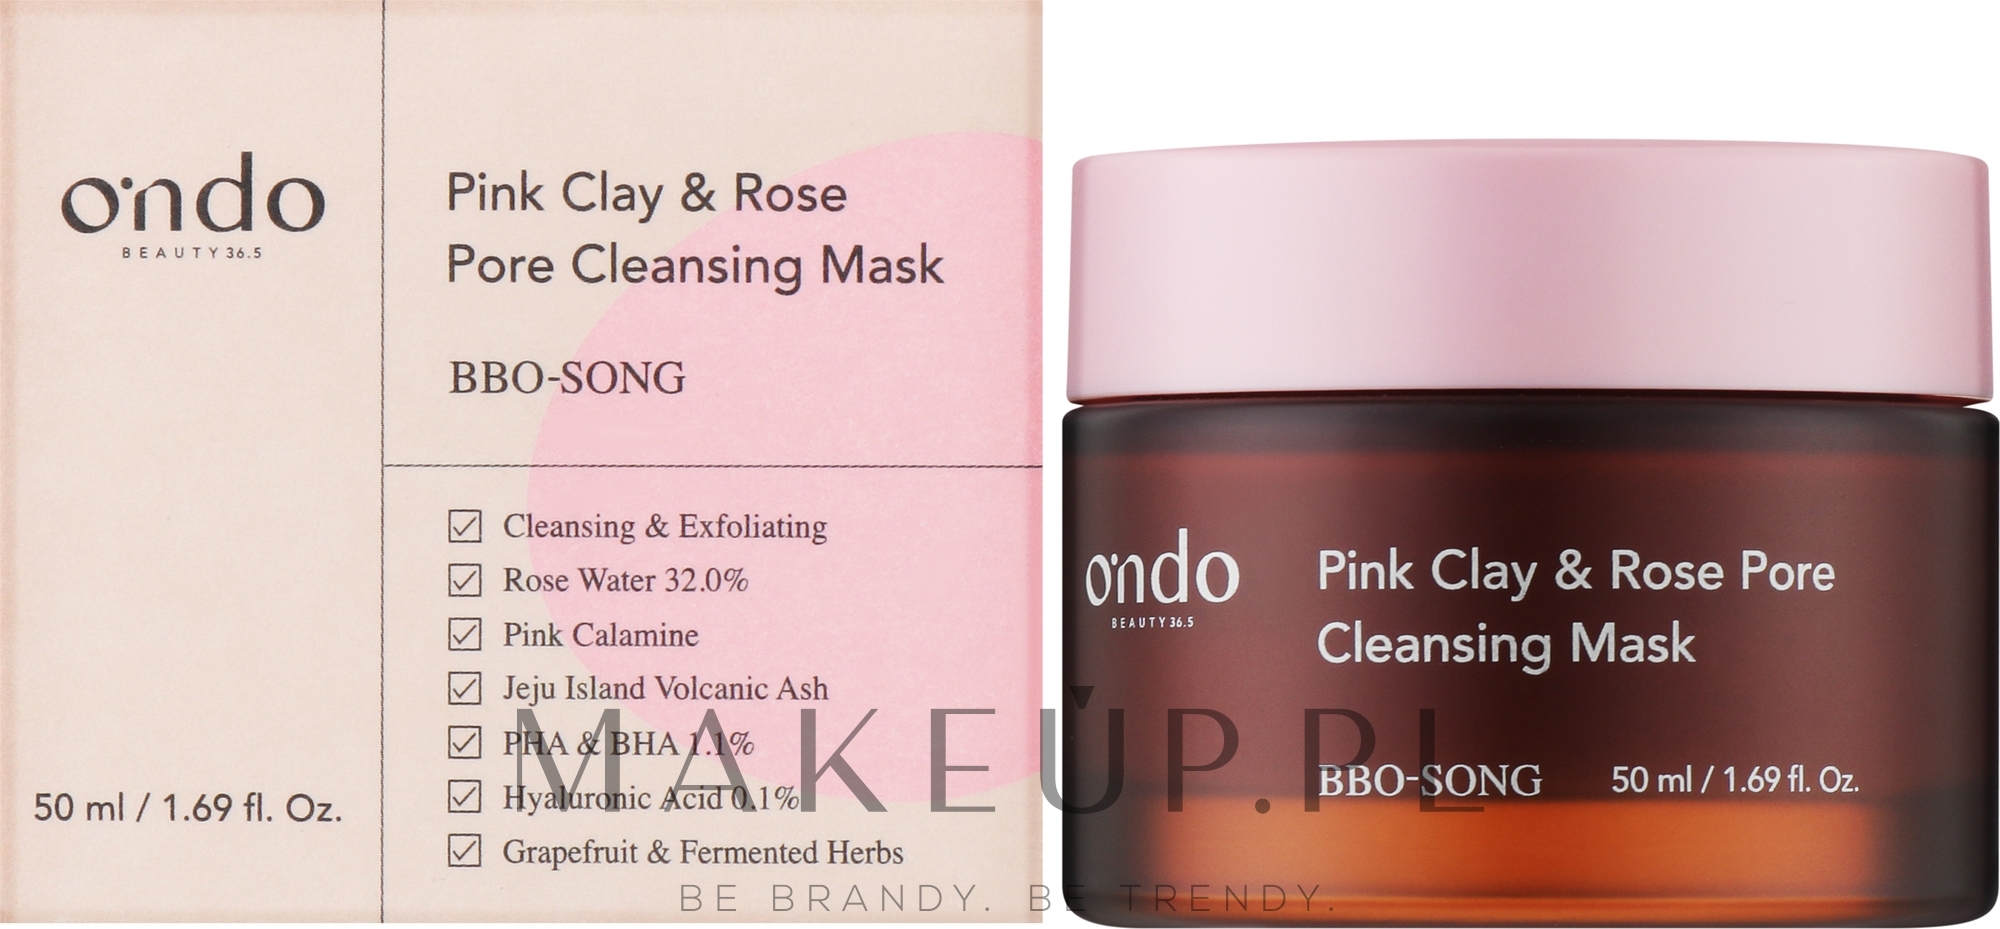 Maseczka oczyszczająca z różową glinką i różą - Ondo Beauty 36.5 Pink Clay & Rose Pore Cleansing Mask — Zdjęcie 50 ml